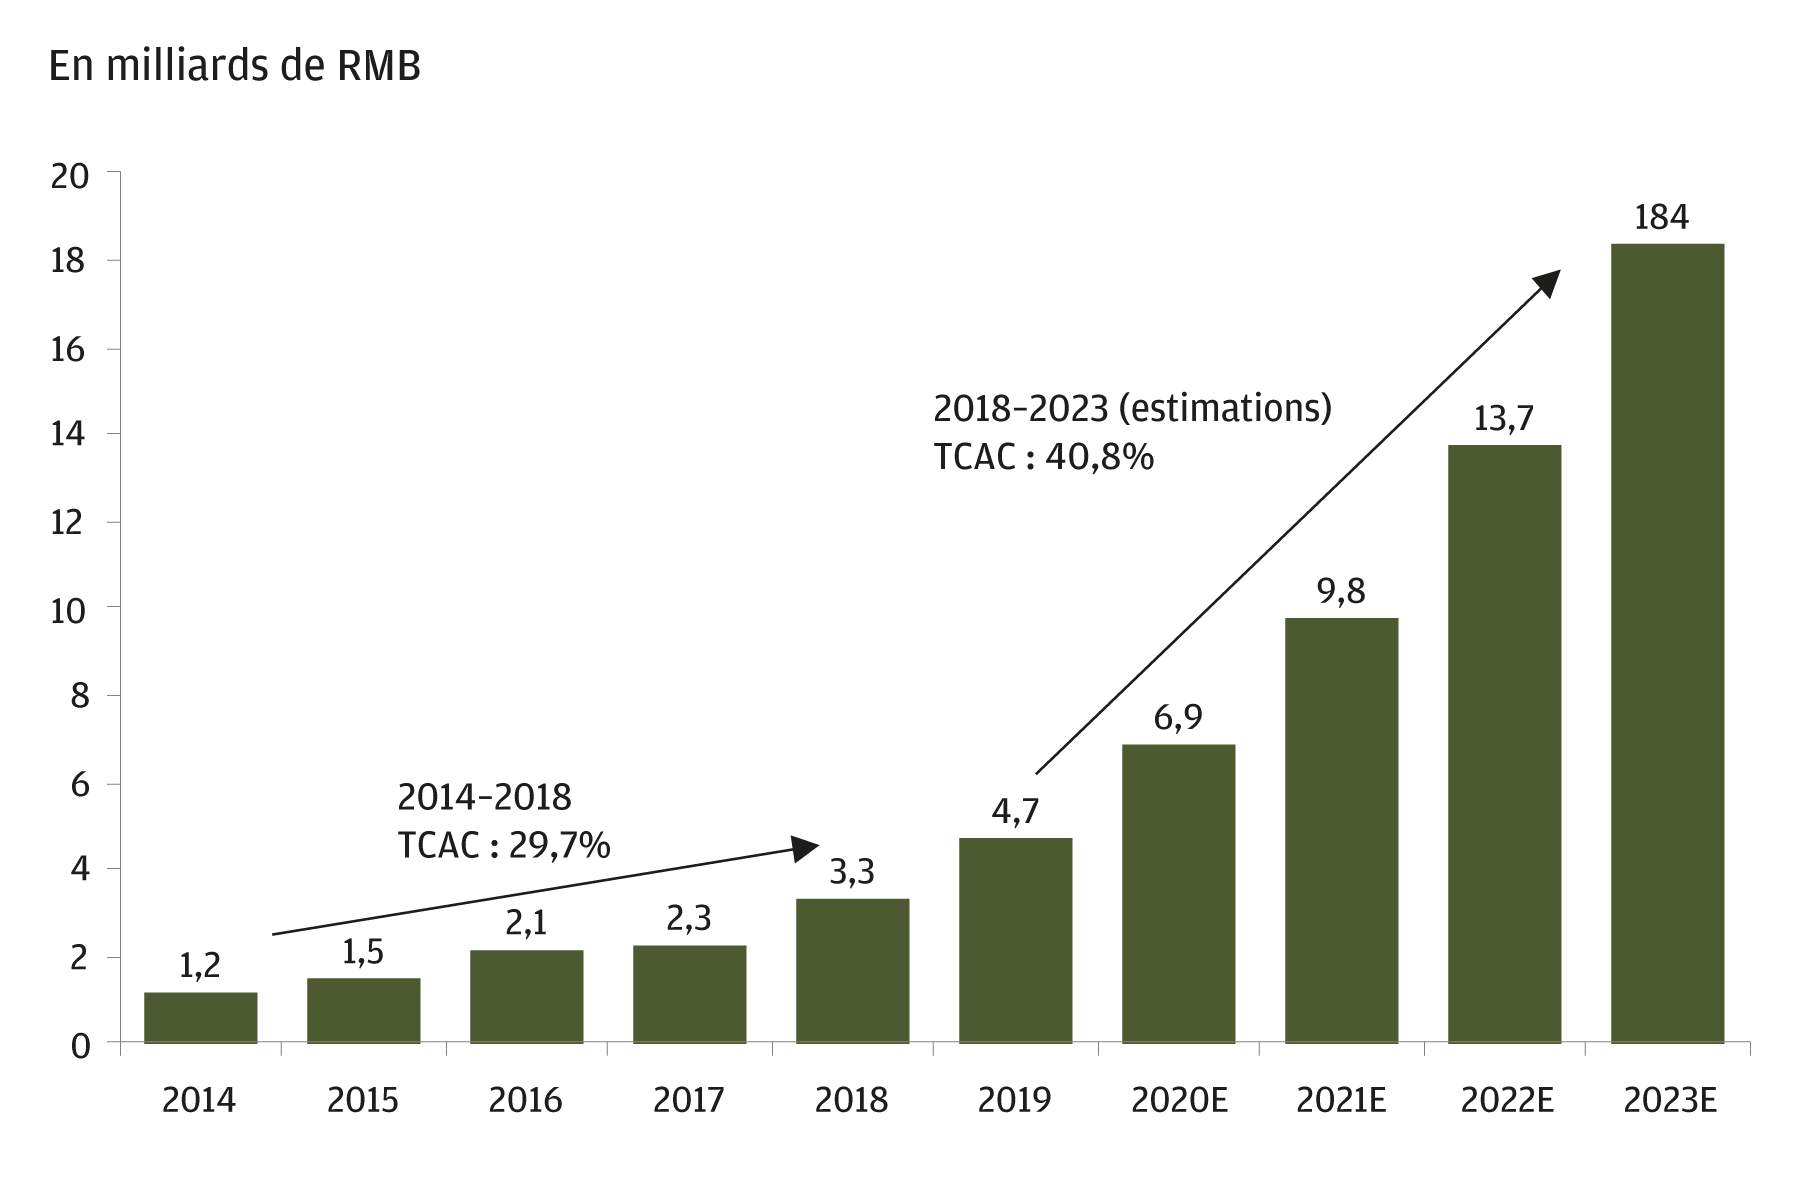 Ce graphique montre le taux de croissance historique et projeté du marché de la sous-traitance des produits biologiques en Chine sur la période de 2014 à 2023. Les chiffres fournis pour la période 2020-2023 sont des prévisions. De 2014 à 2018, le marché a affiché un taux de croissance annuel composé (TCAC) de 29,7%. Le taux de croissance annuel composé (TCAC) projeté pour la période 2018-2023 s'établit à 40,8%.